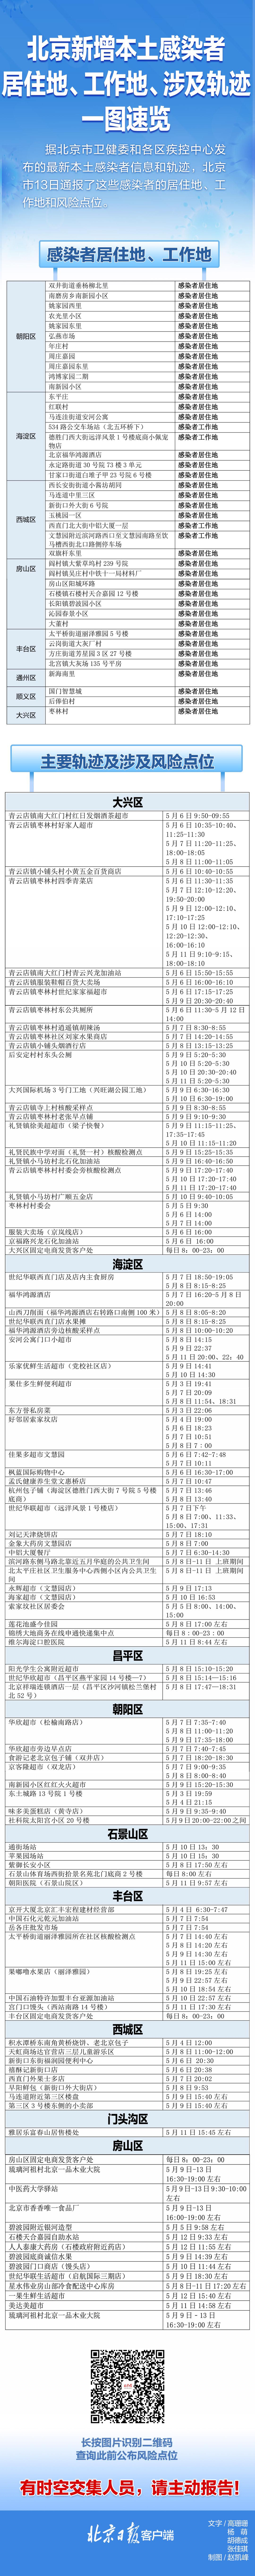 速自查！北京13日通报感染者居住地、风险点位一图速览 (http://www.szcoop.com.cn/) 国内 第1张